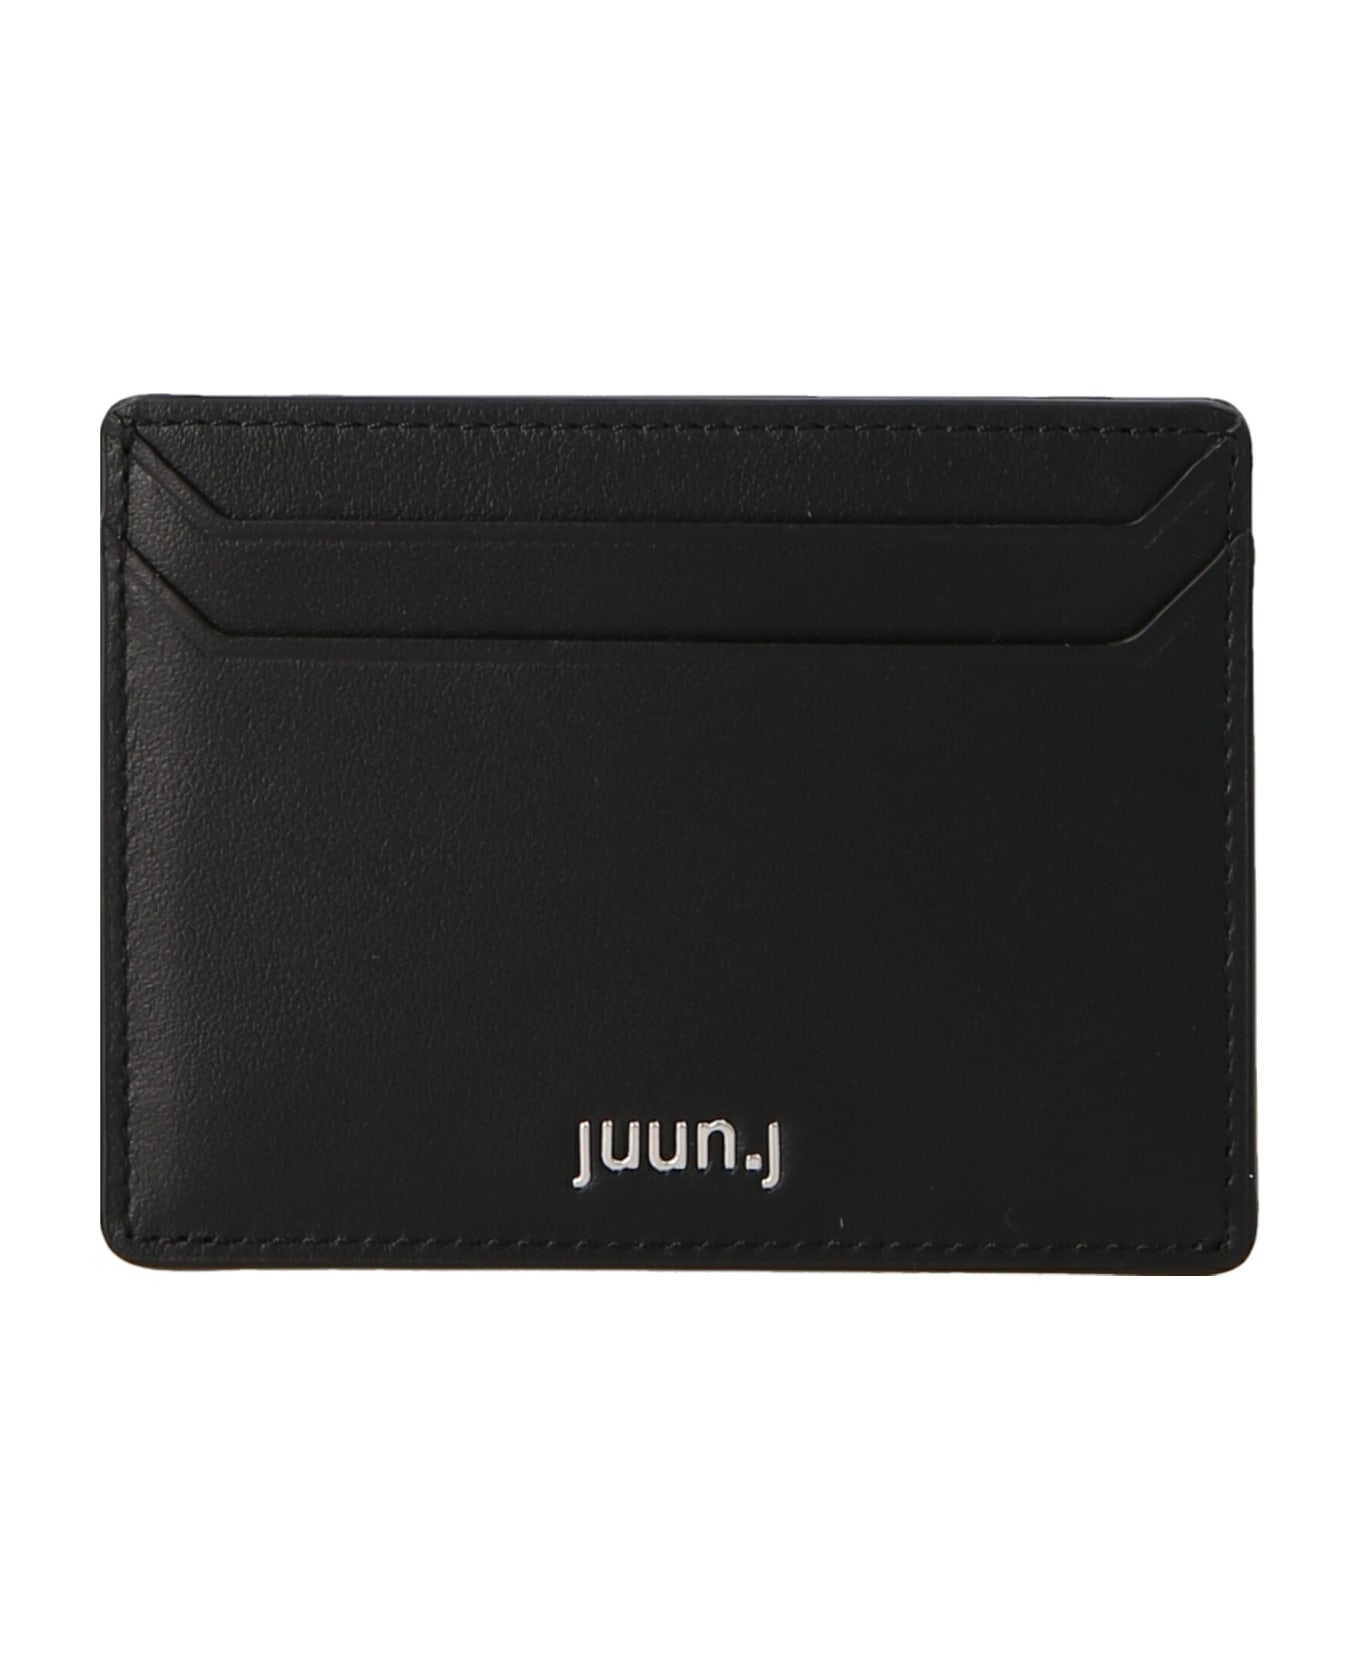 Juun.J Logo Leather Card Holder - Black  